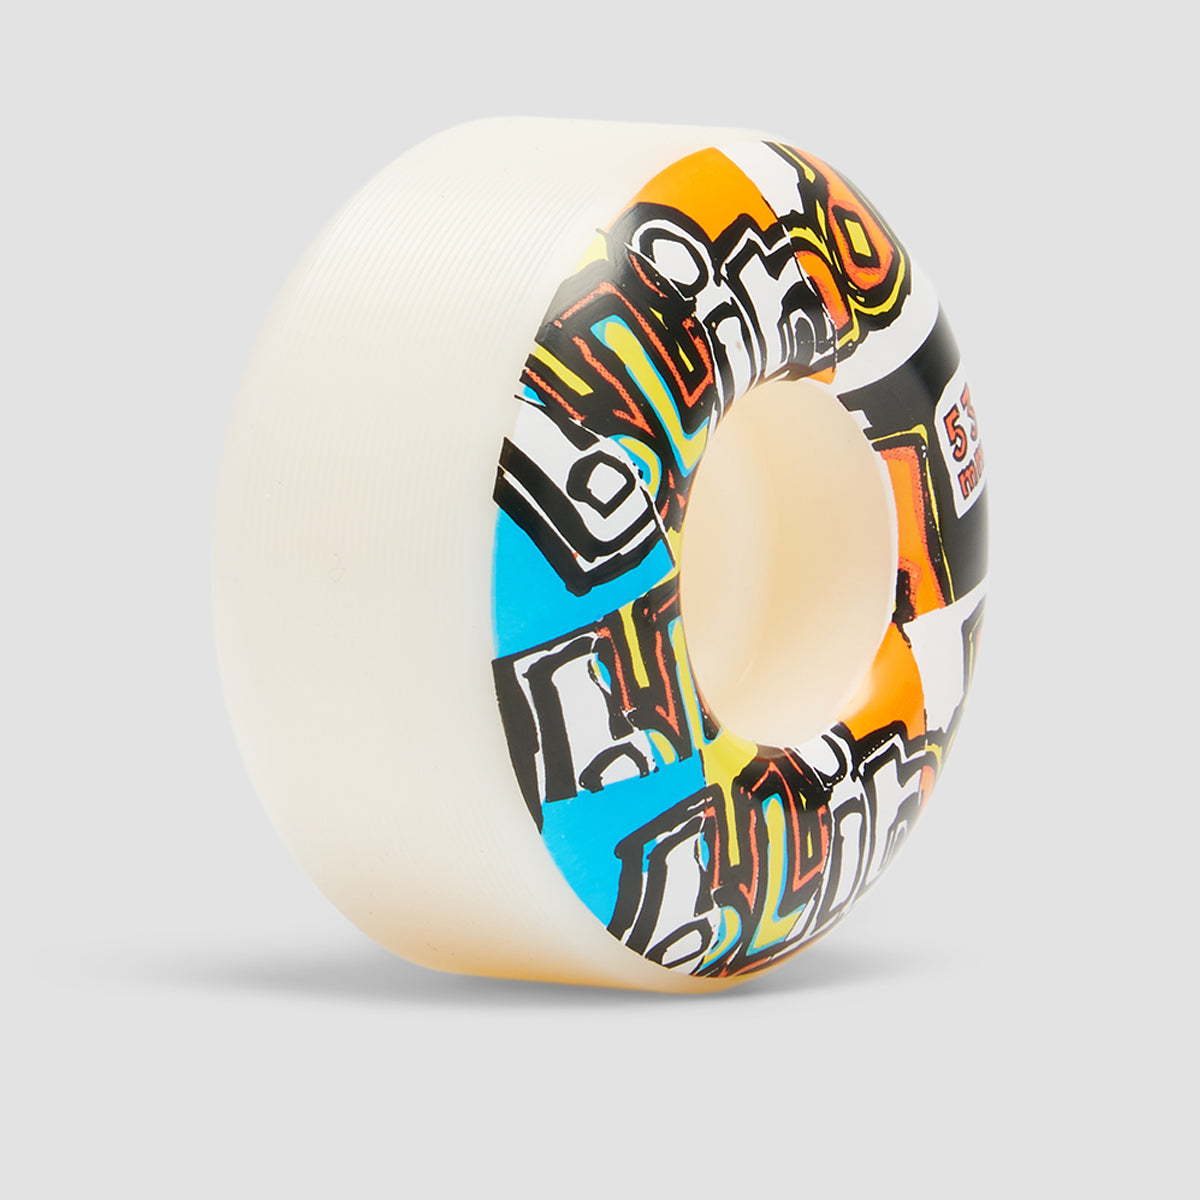 Blind OG Ripped Skateboard Wheels Multi 53mm